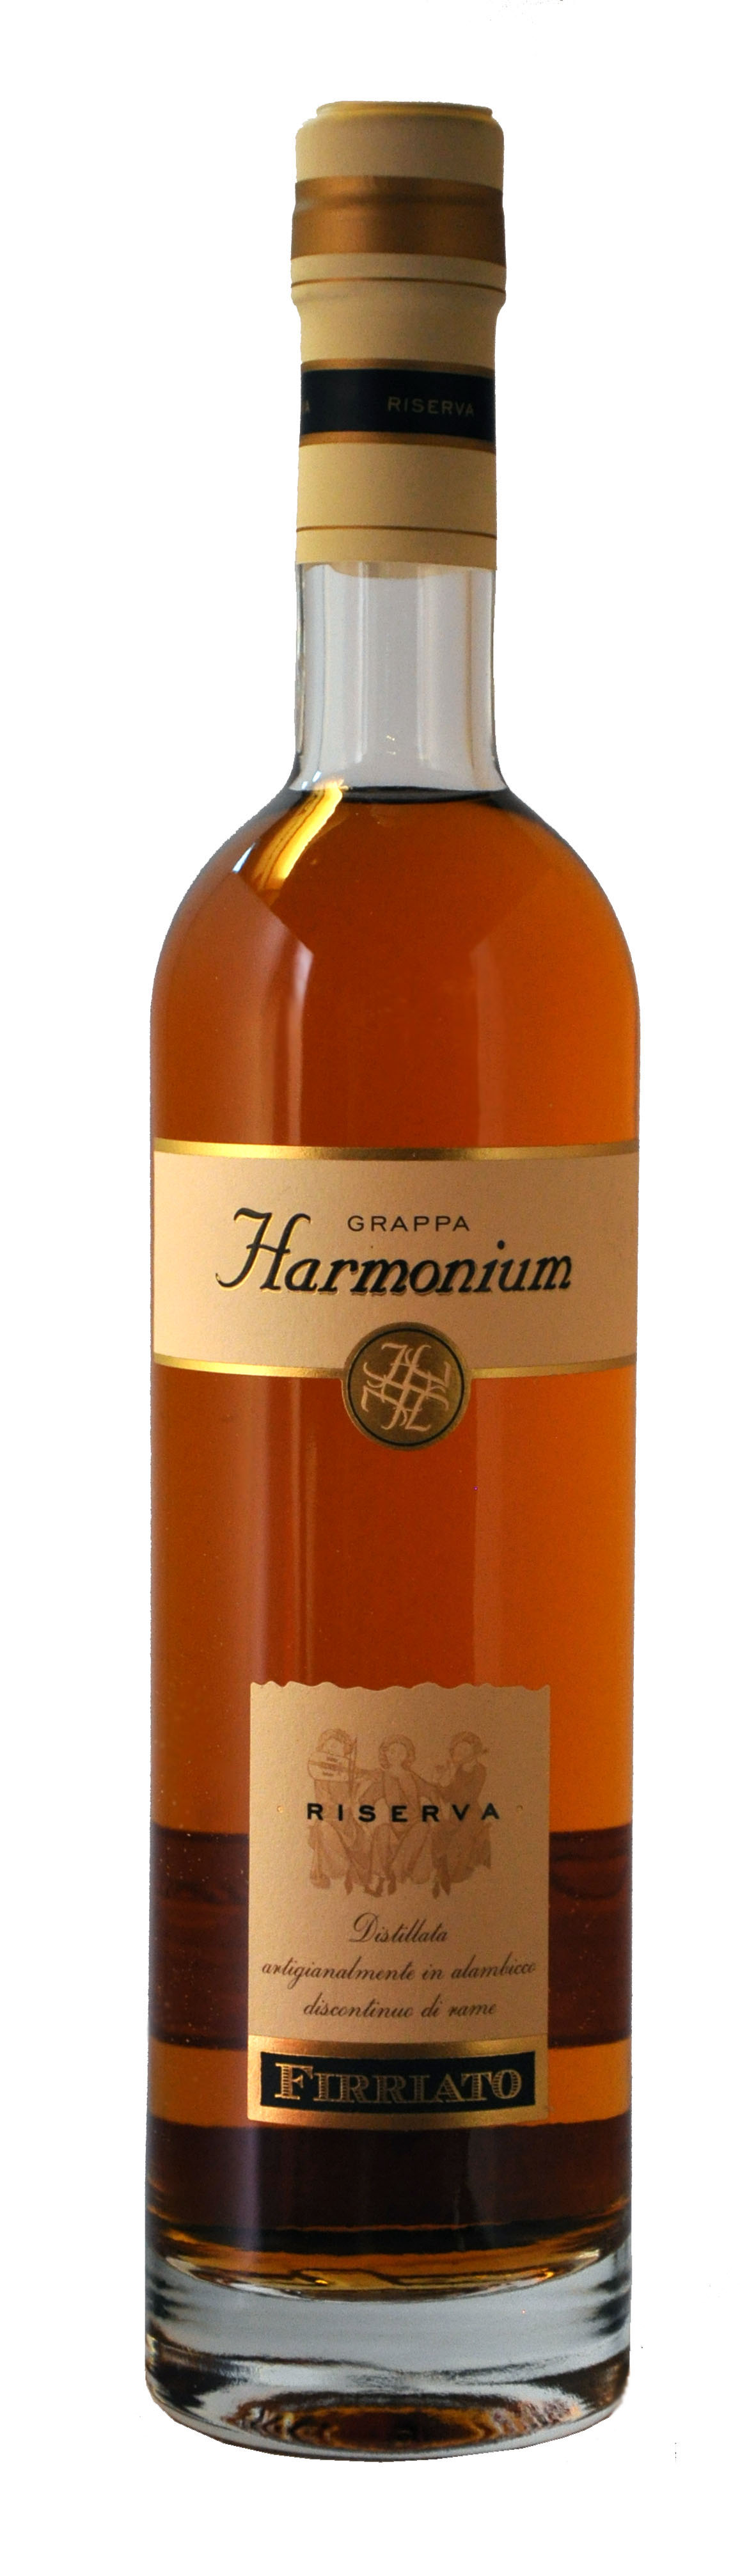 Grappa di Sicilia "Harmonium" Riserva affinata 43% Vol.